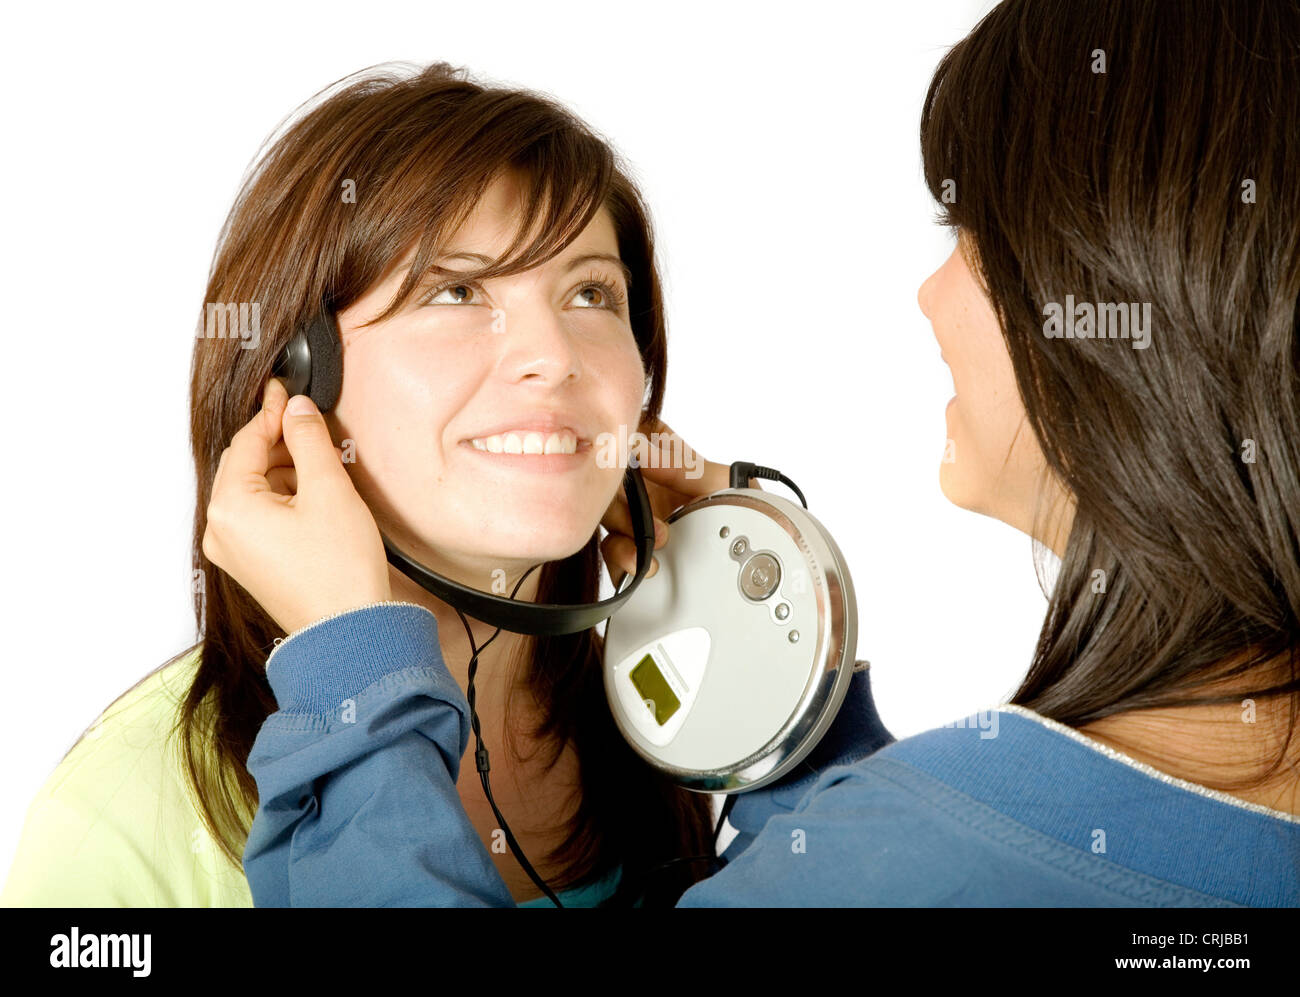 girls listening to music Stock Photo